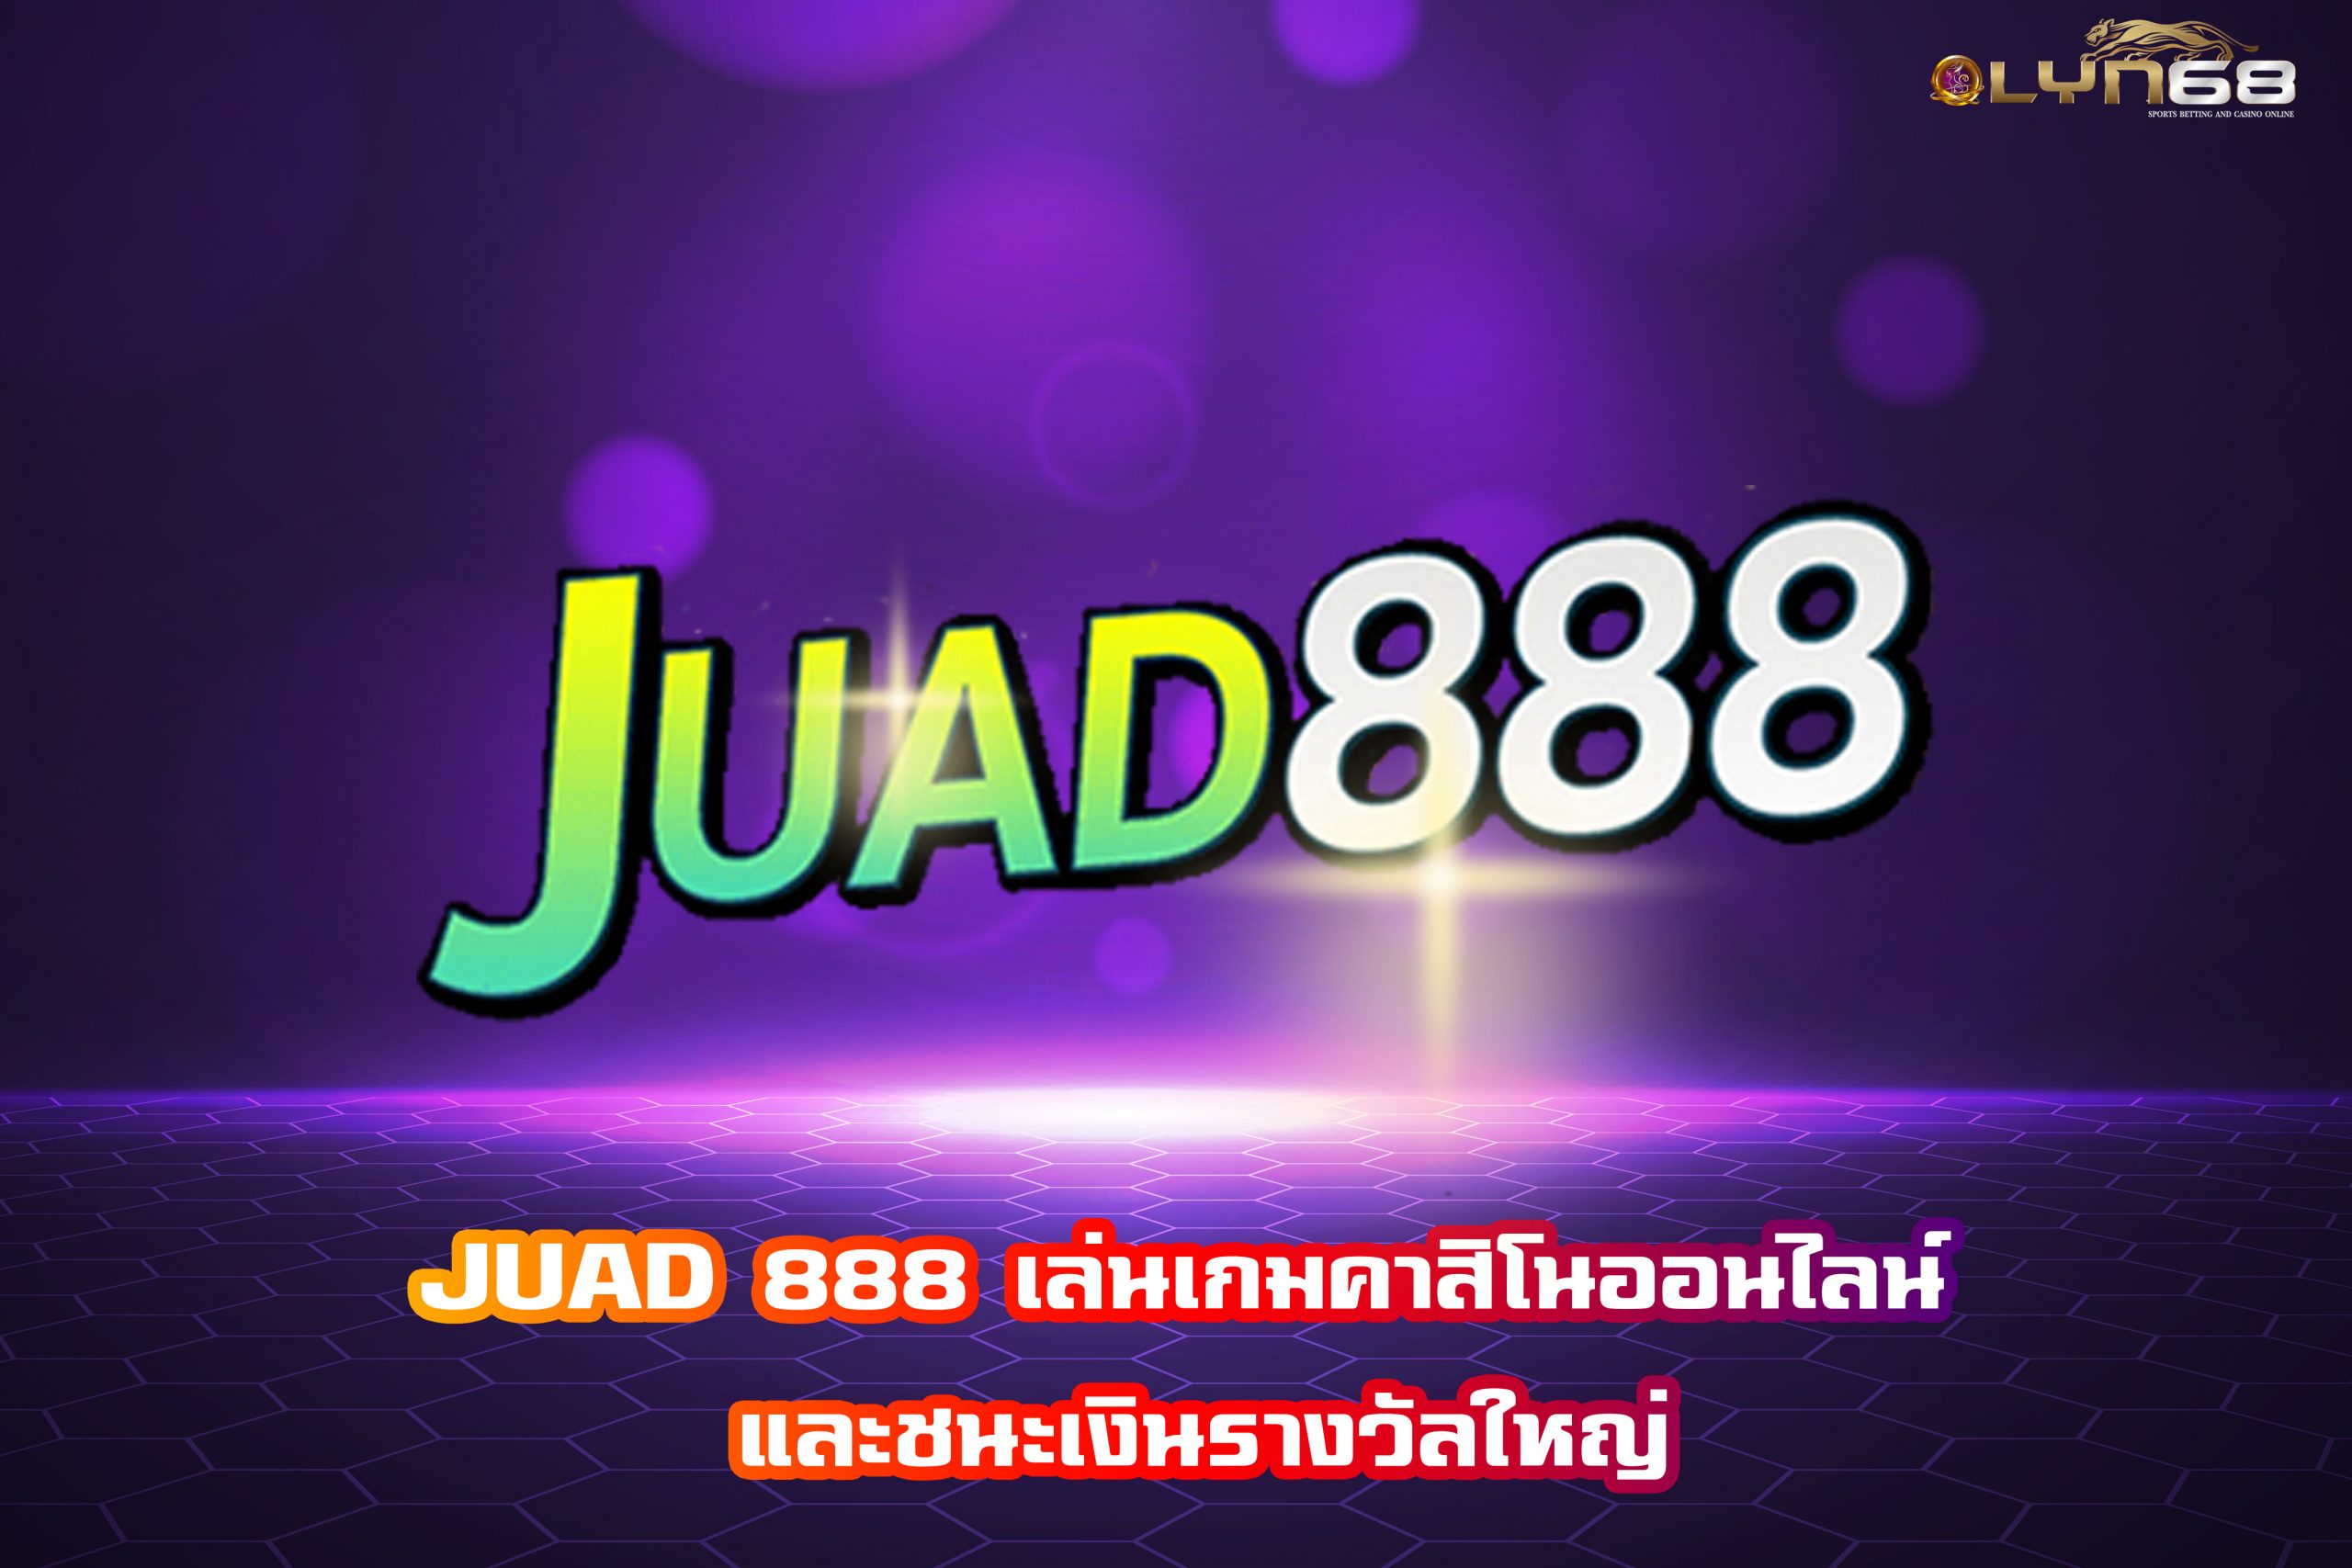 JUAD 888 เล่นเกมคาสิโนออนไลน์ และชนะเงินรางวัลใหญ่